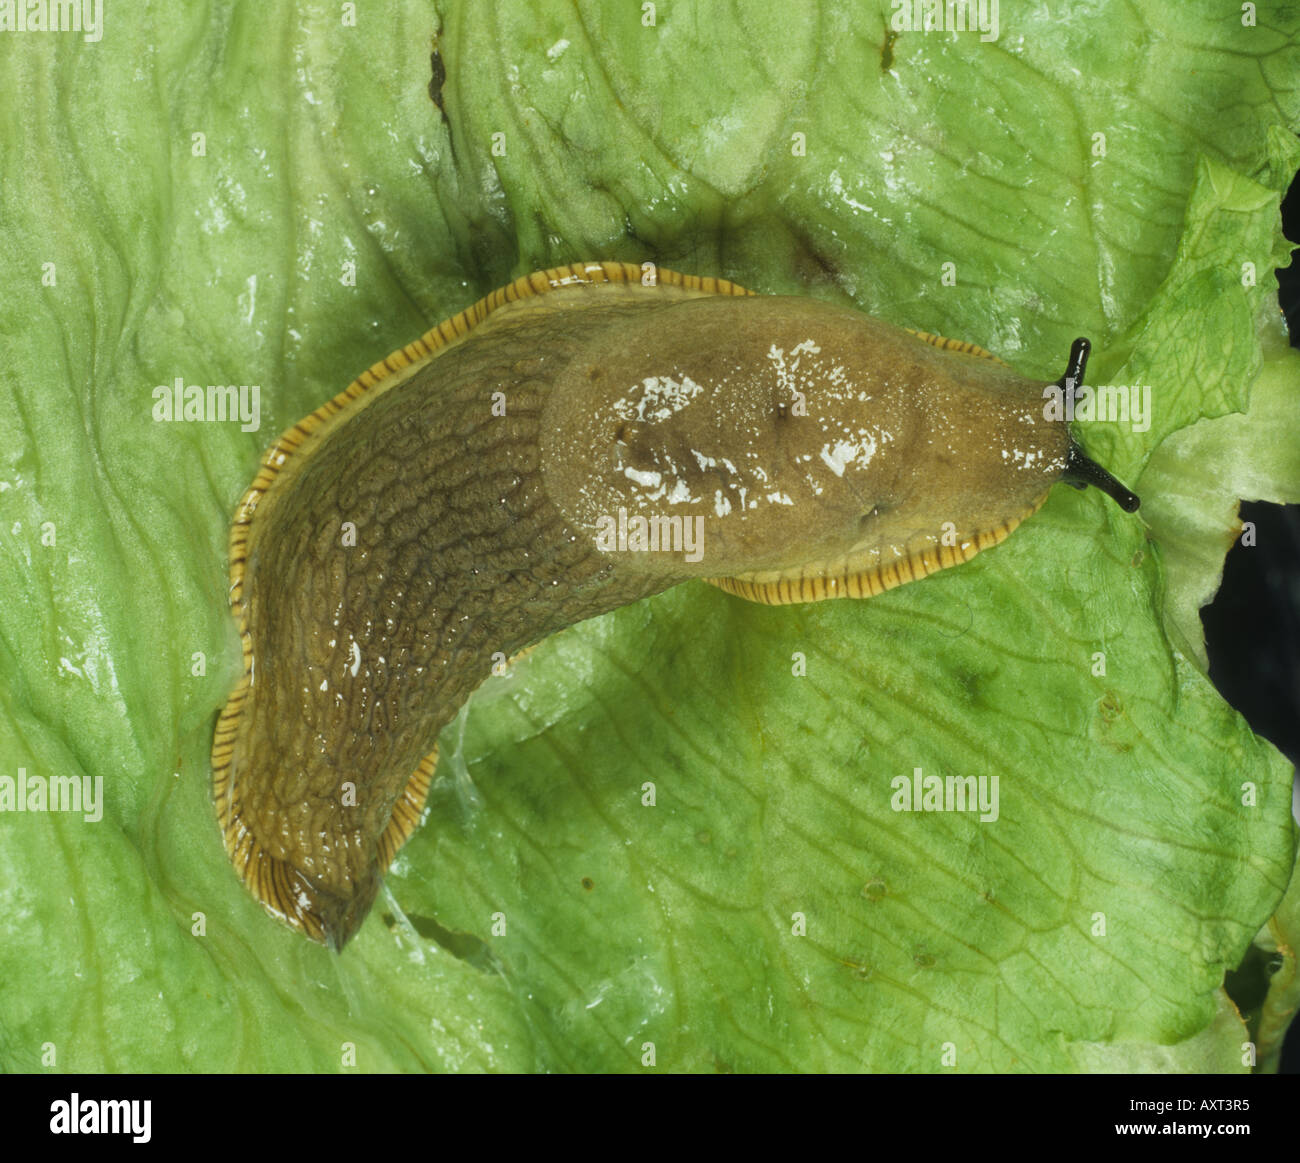 Large black slug Arion ater on a lettuce leaf Stock Photo